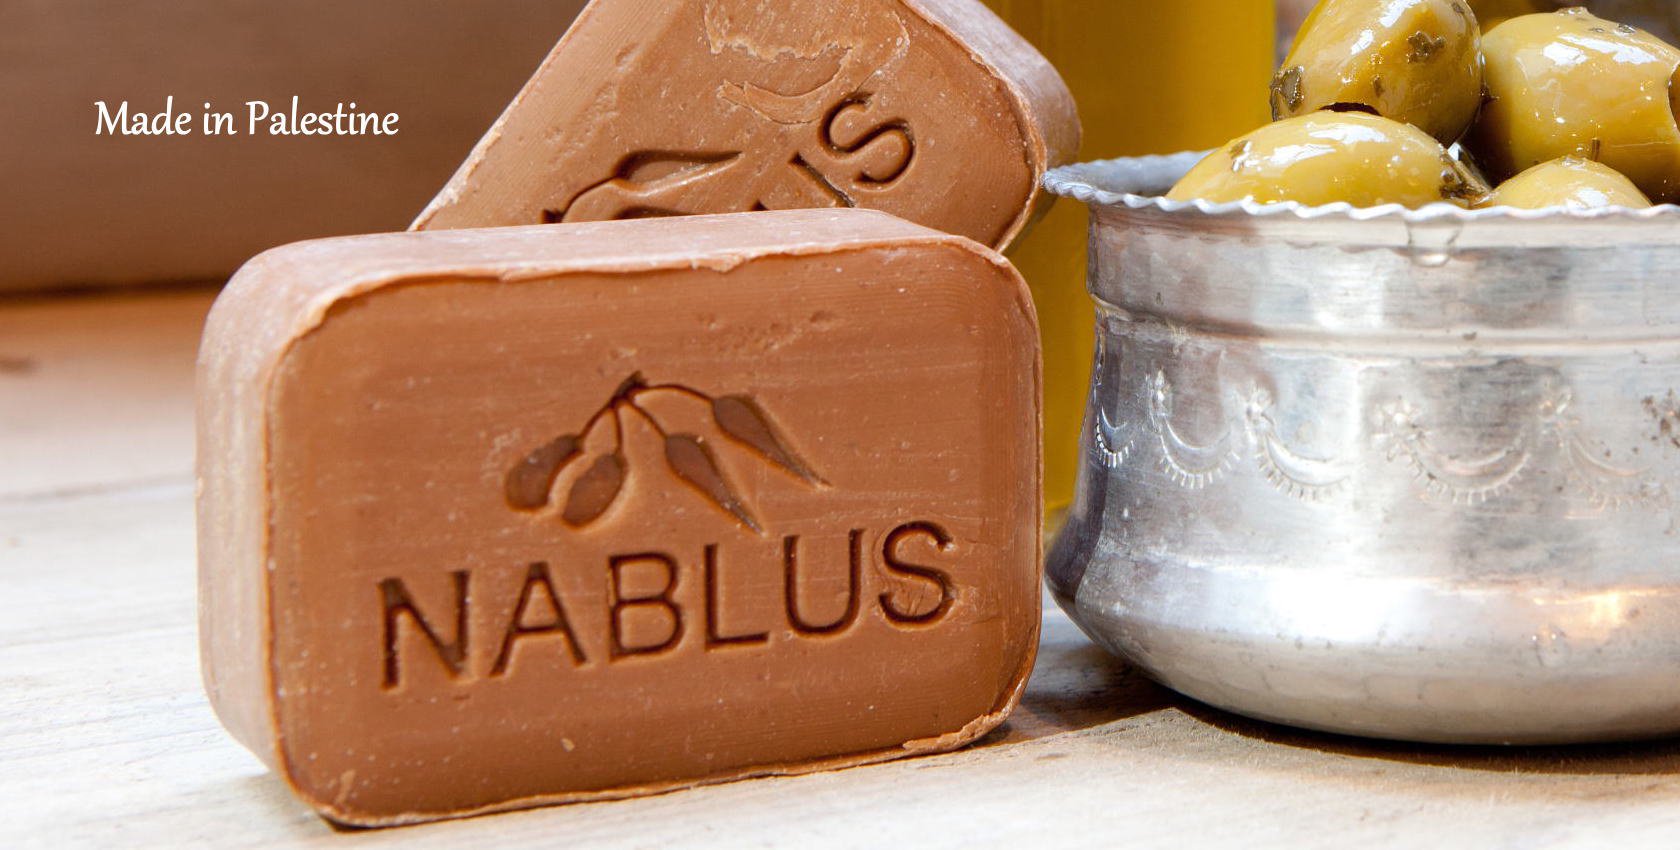 ナーブルスソープ (NABLUS SOAP)